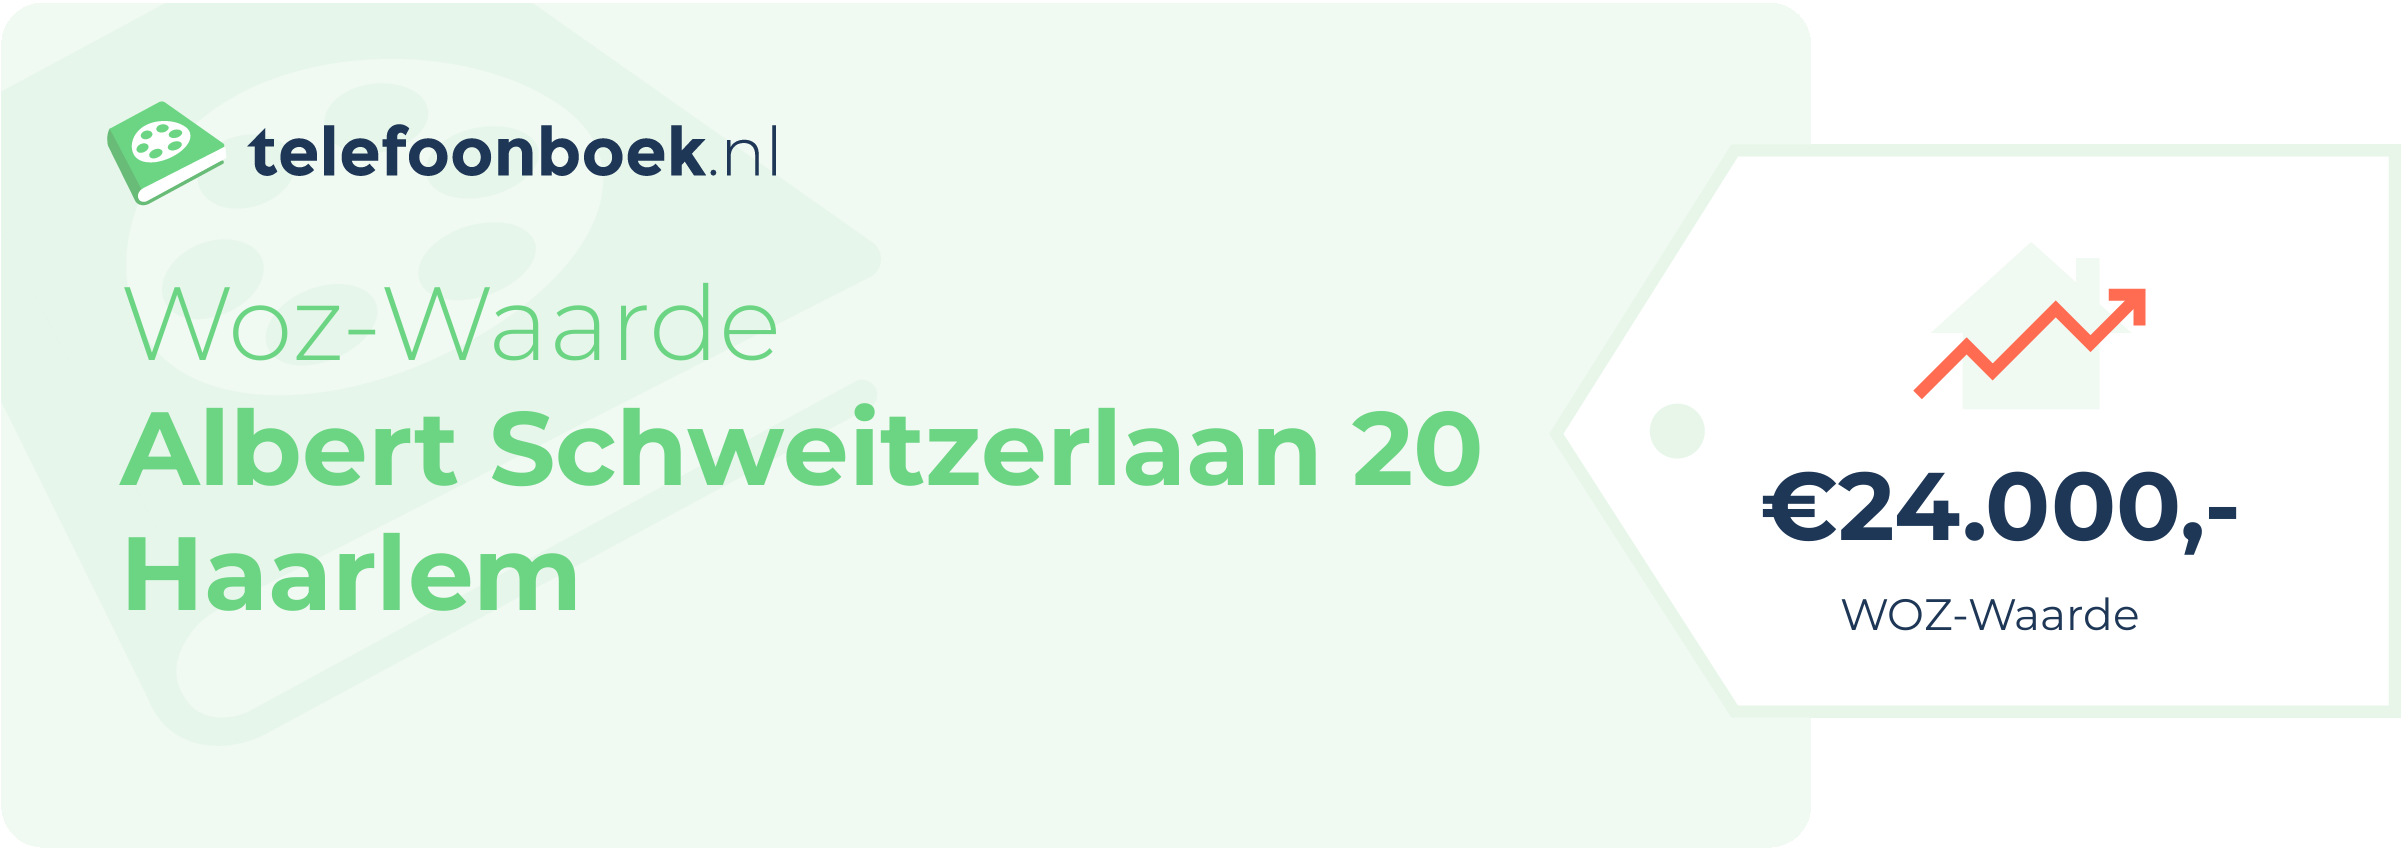 WOZ-waarde Albert Schweitzerlaan 20 Haarlem